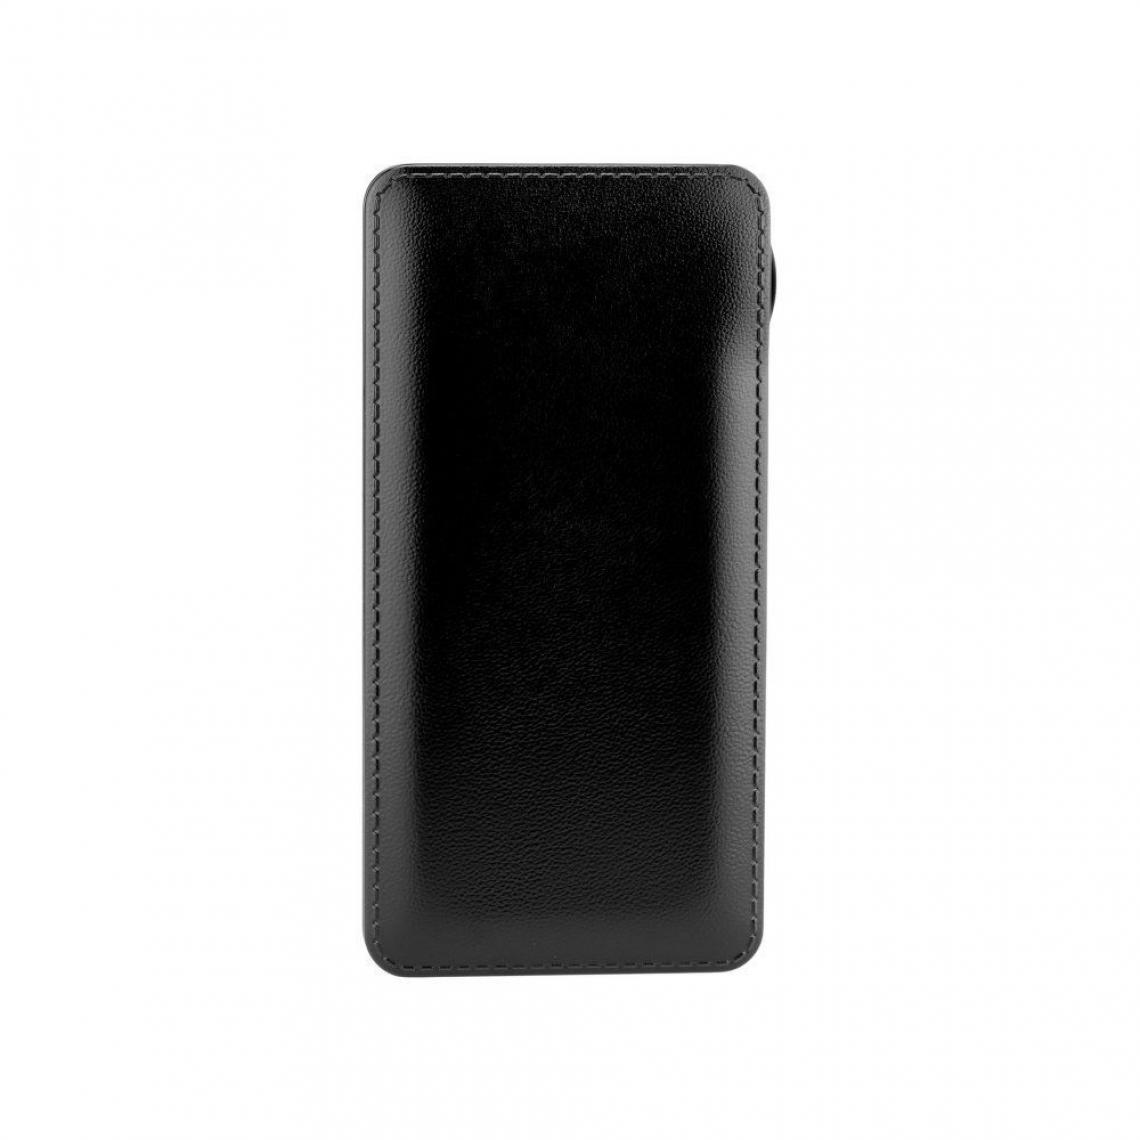 Ozzzo - Chargeur batterie externe 30000 mAh powerbank ozzzo noir pour CATERPILLAR Cat s50 - Autres accessoires smartphone